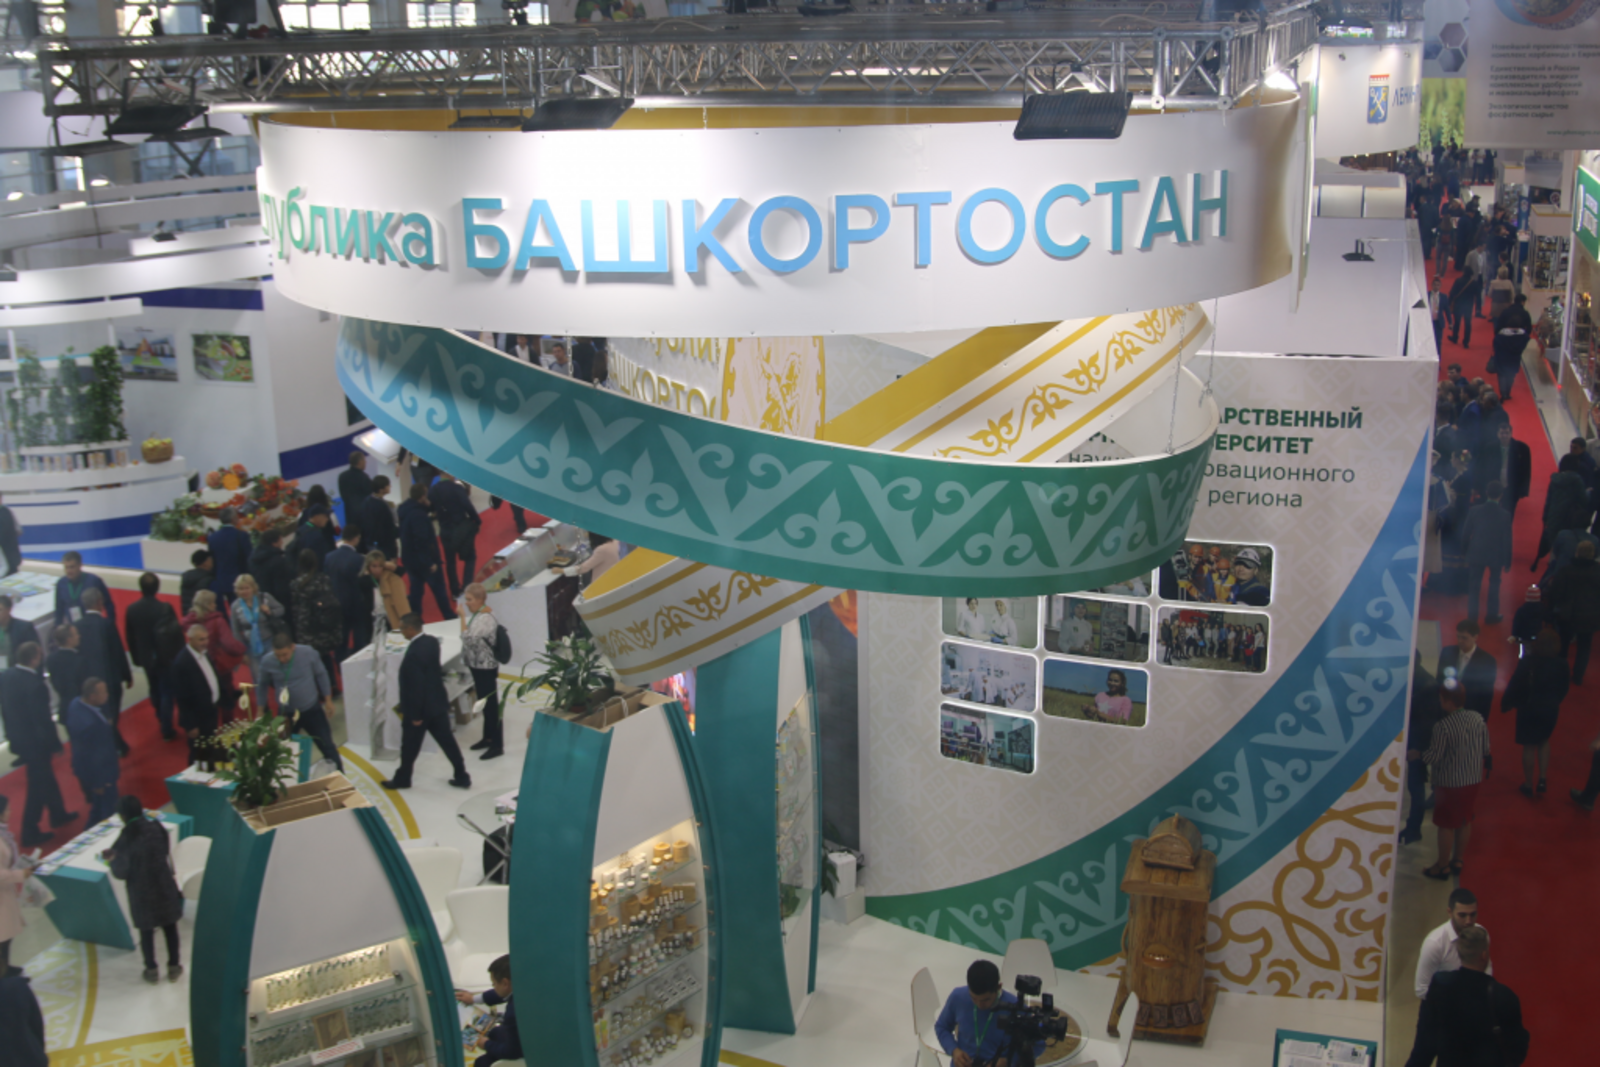 «Алтын көз-2021» күргәзмәсендә Башкортстан стенды 150 квадрат метр мәйданда урнашачак